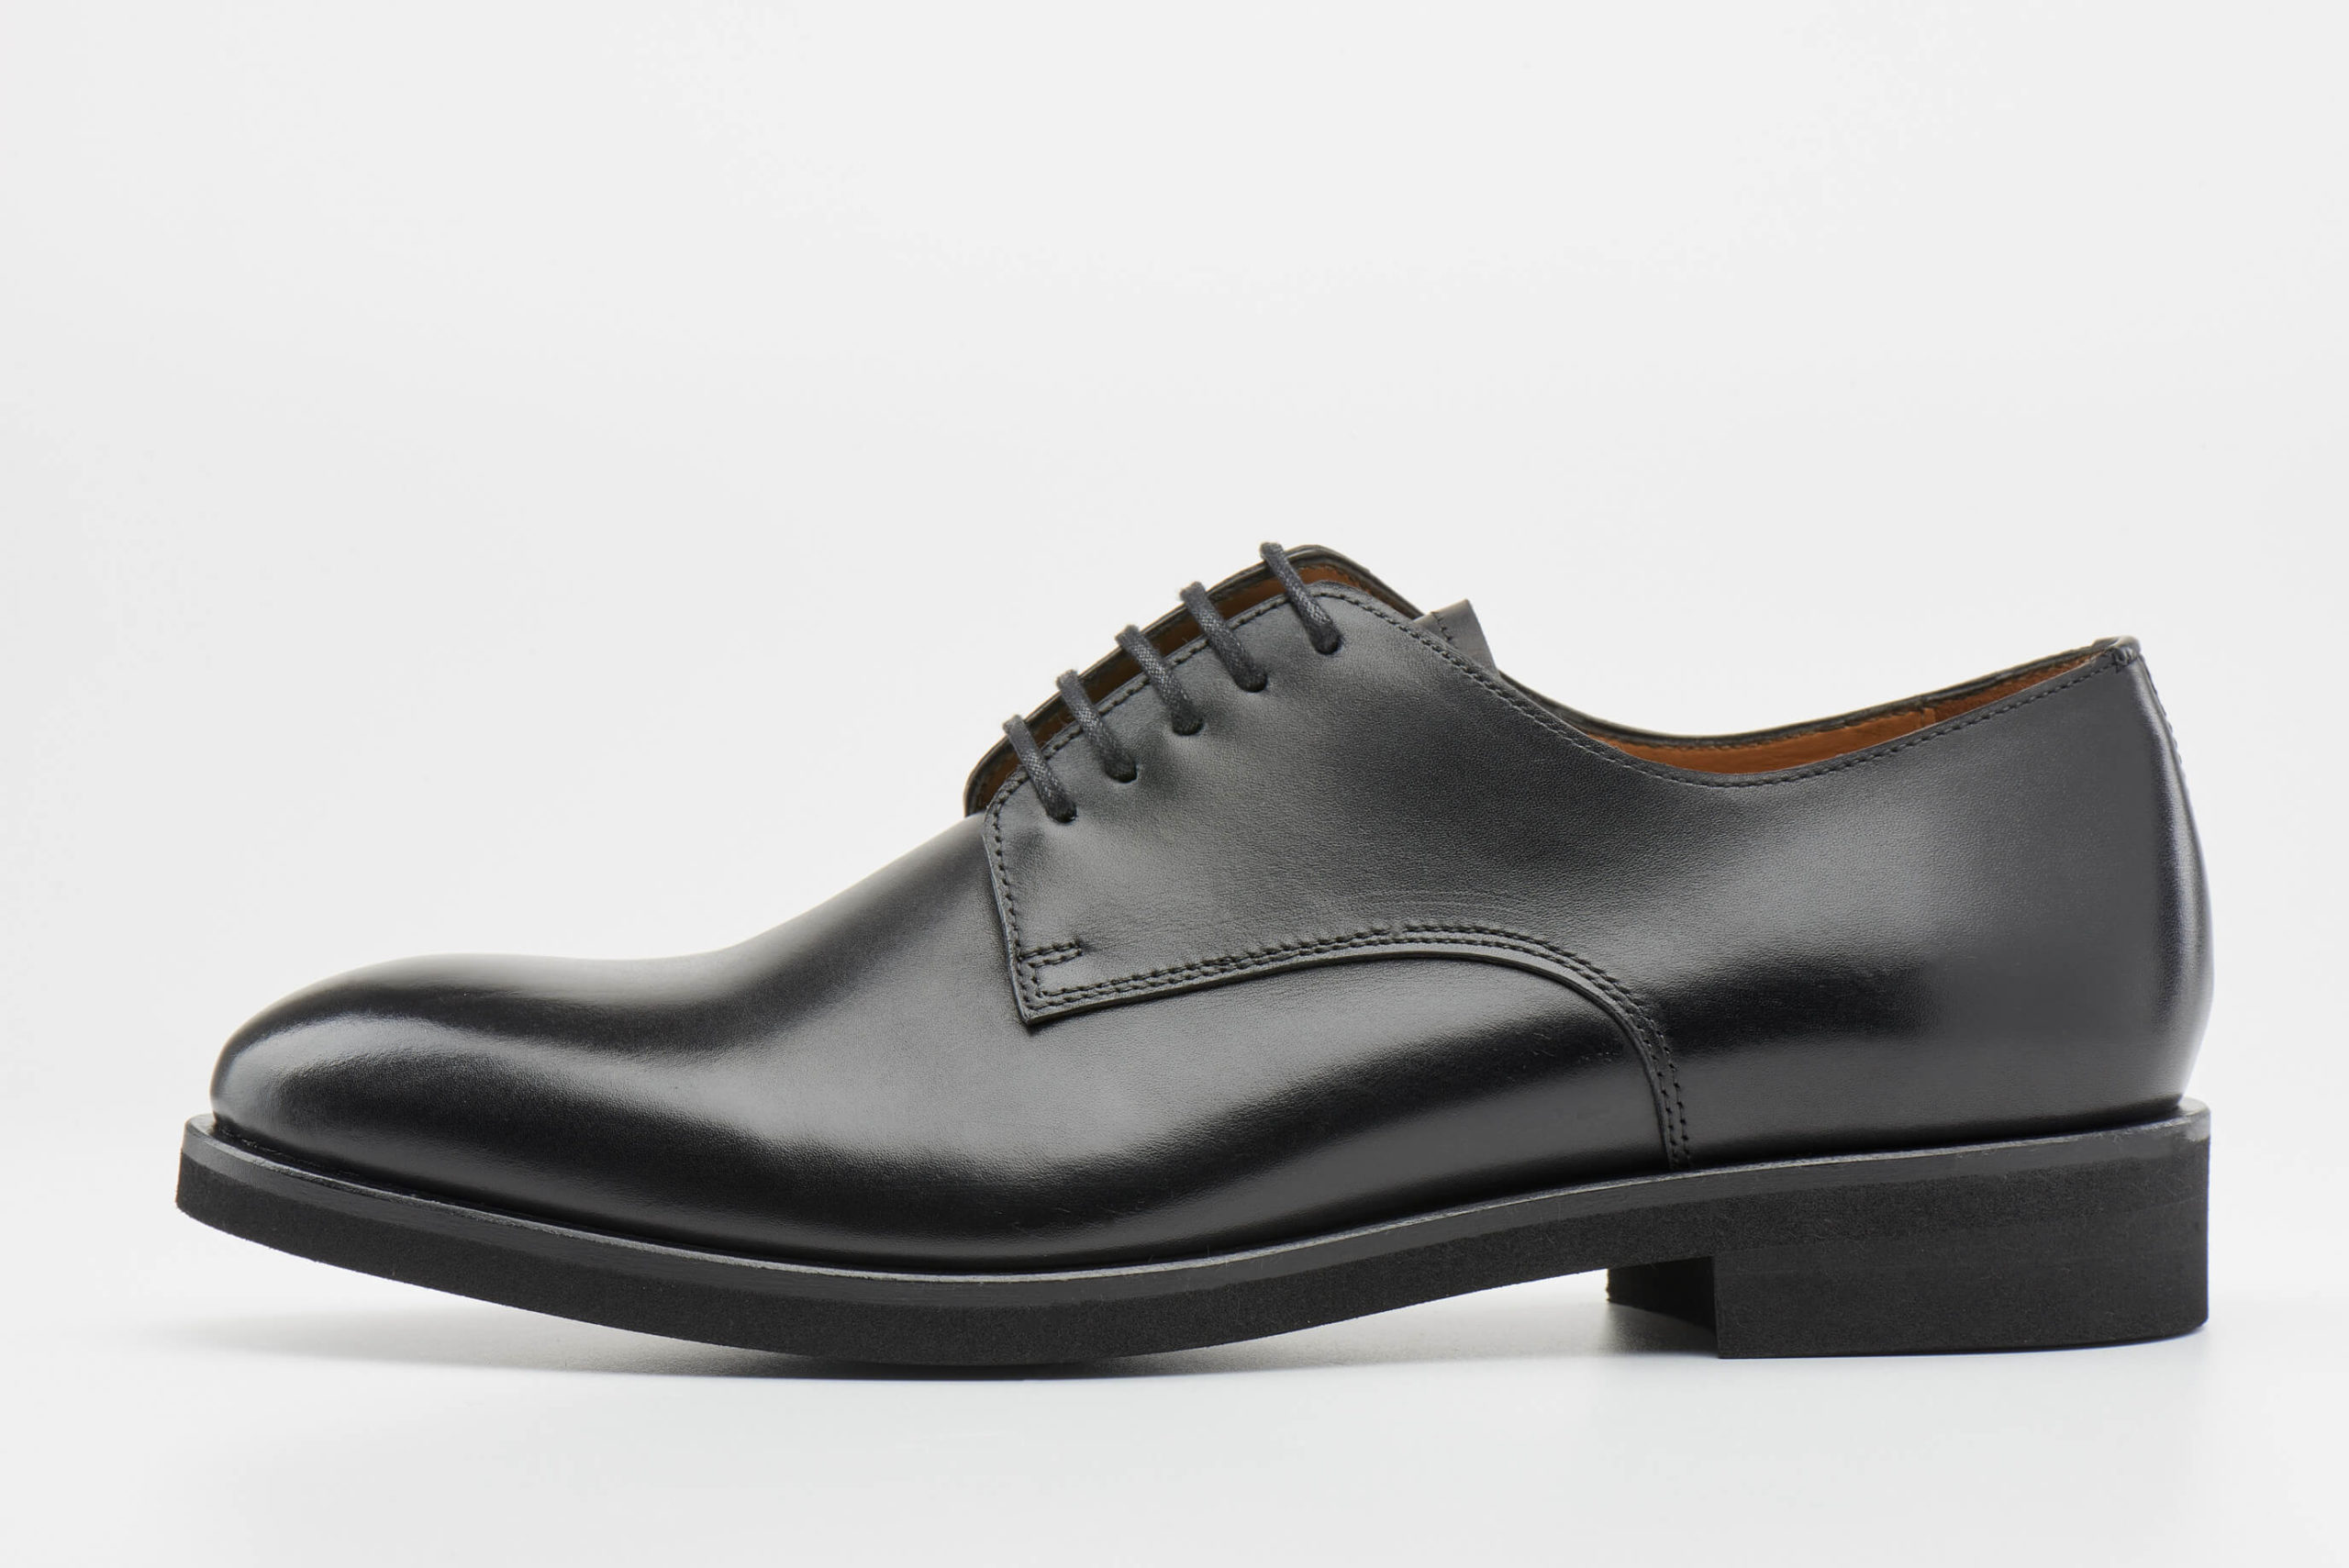 Luis Onofre Portuguese Shoes FW22 – HS0787_01 – Decaf Black-4